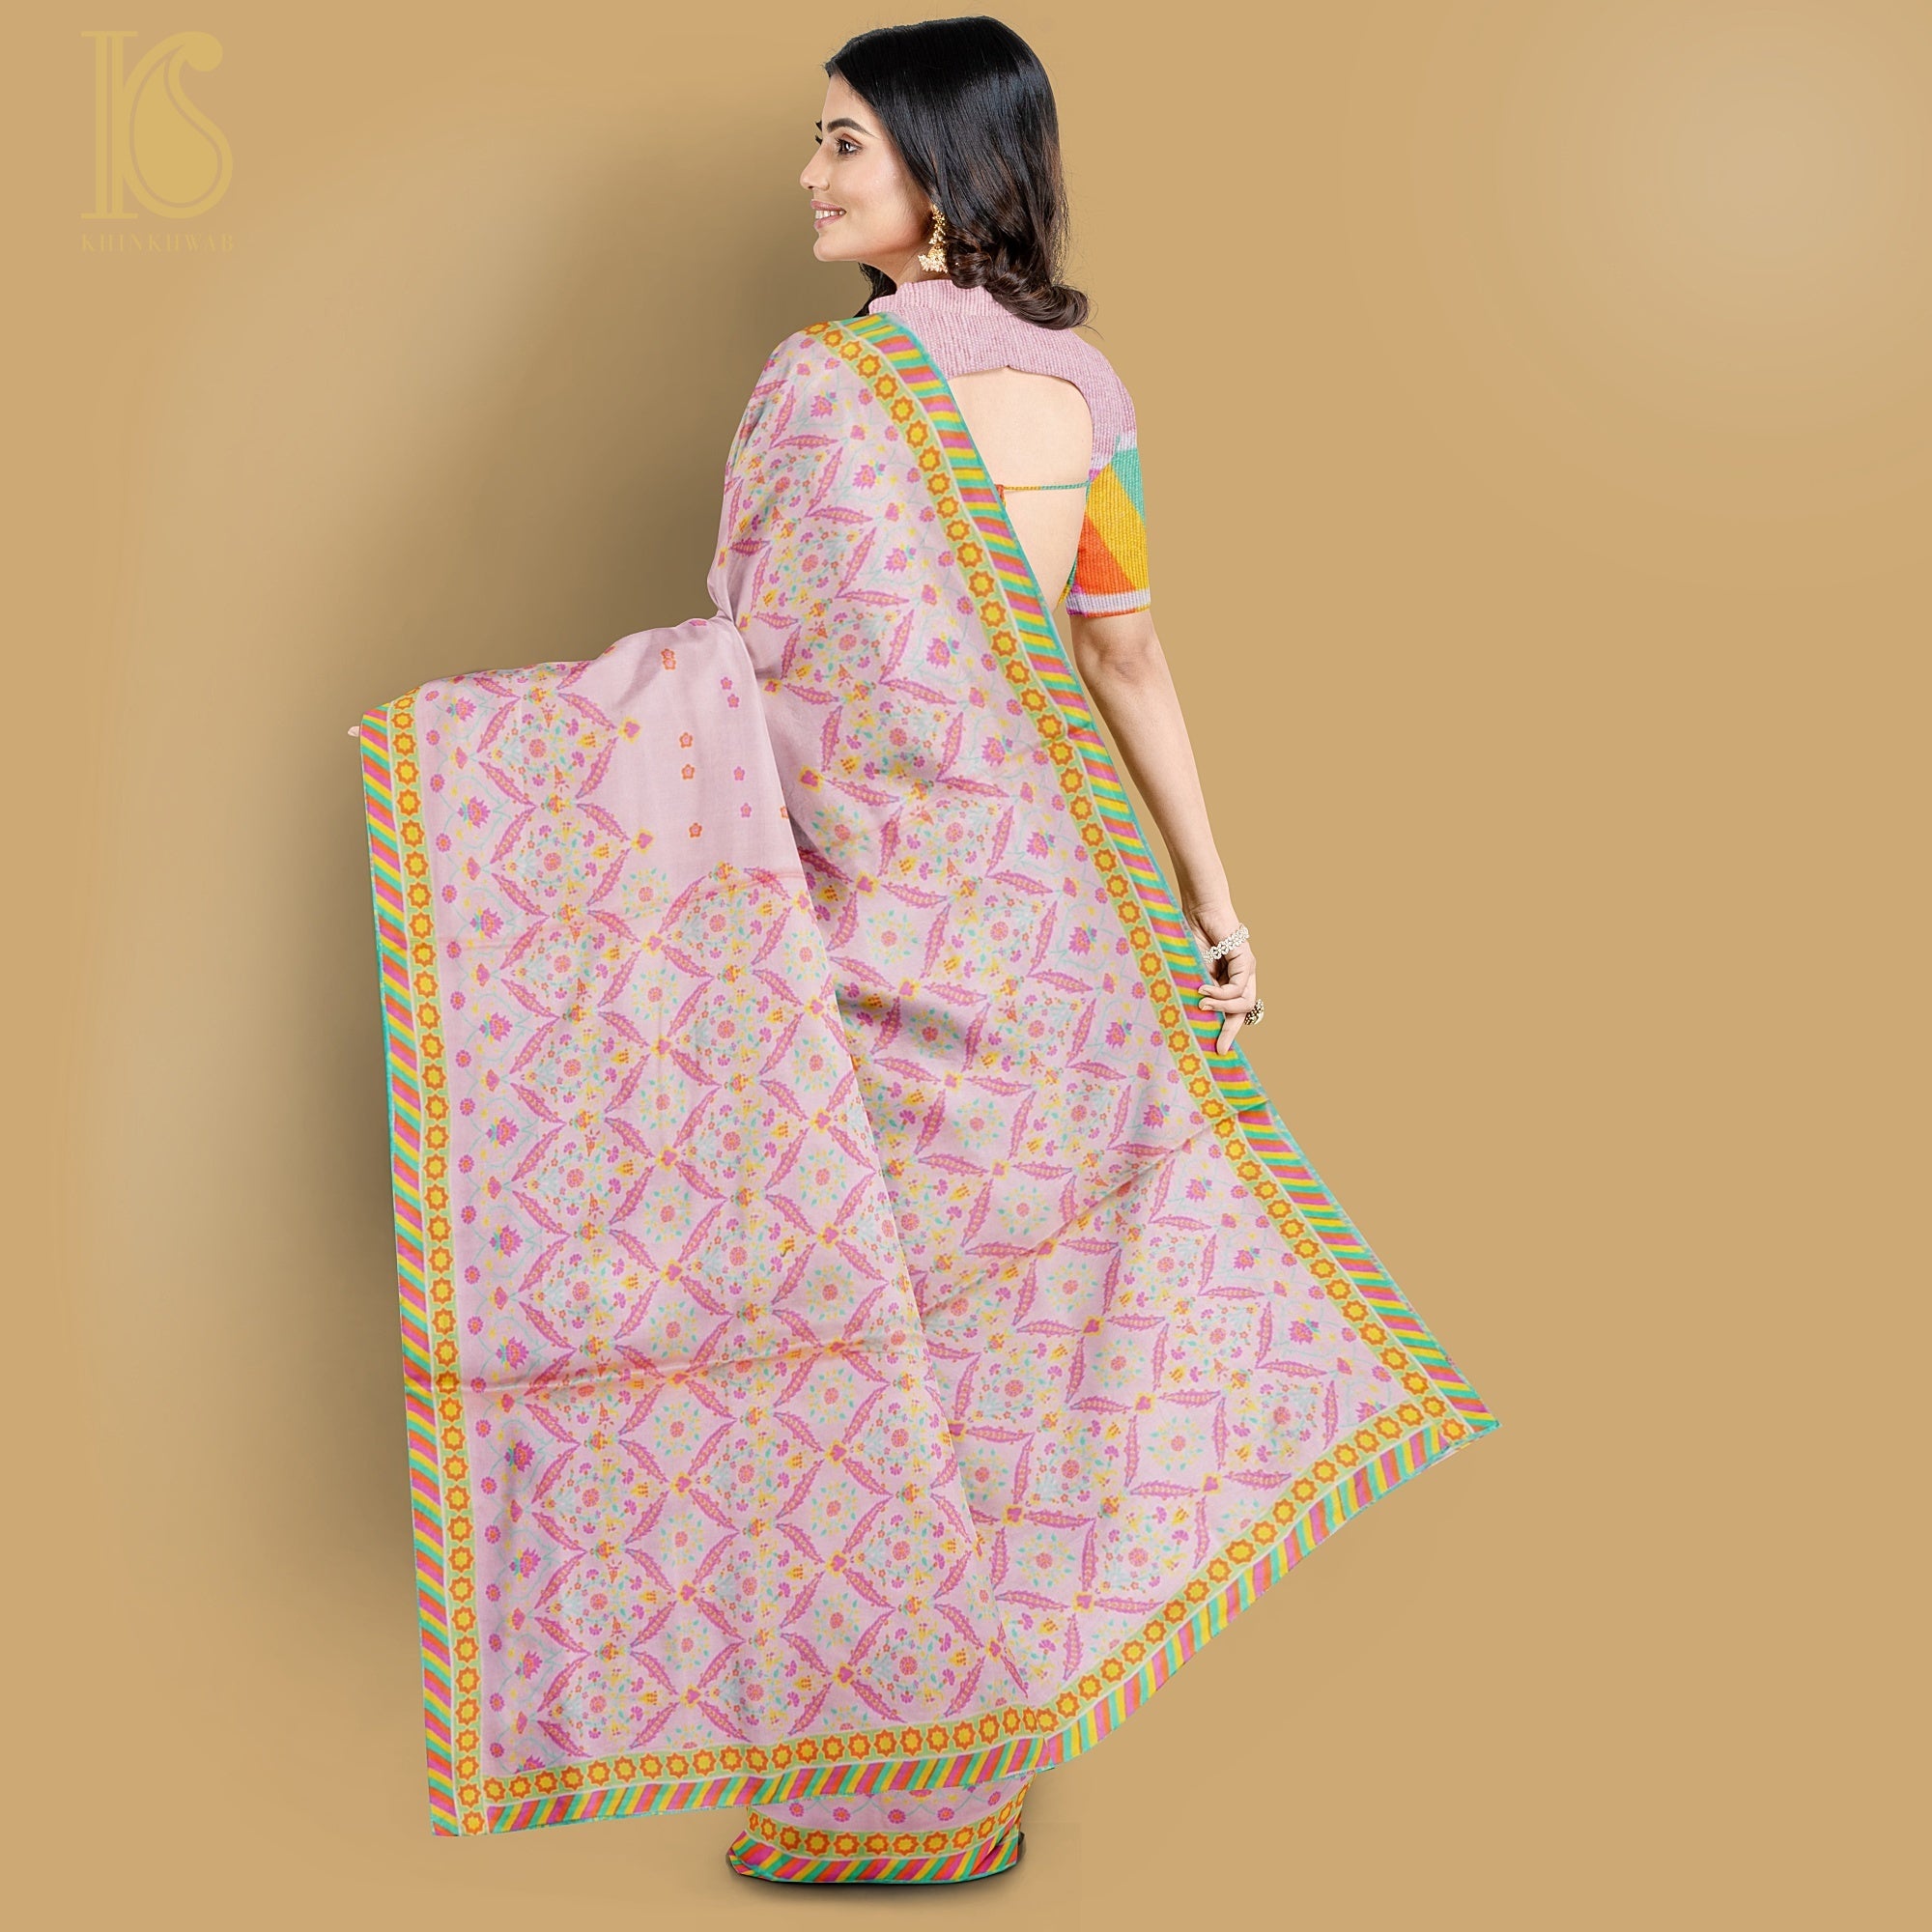 NERGİS -Azalea Pink Pure Sateen Silk Print Saree - Khinkhwab